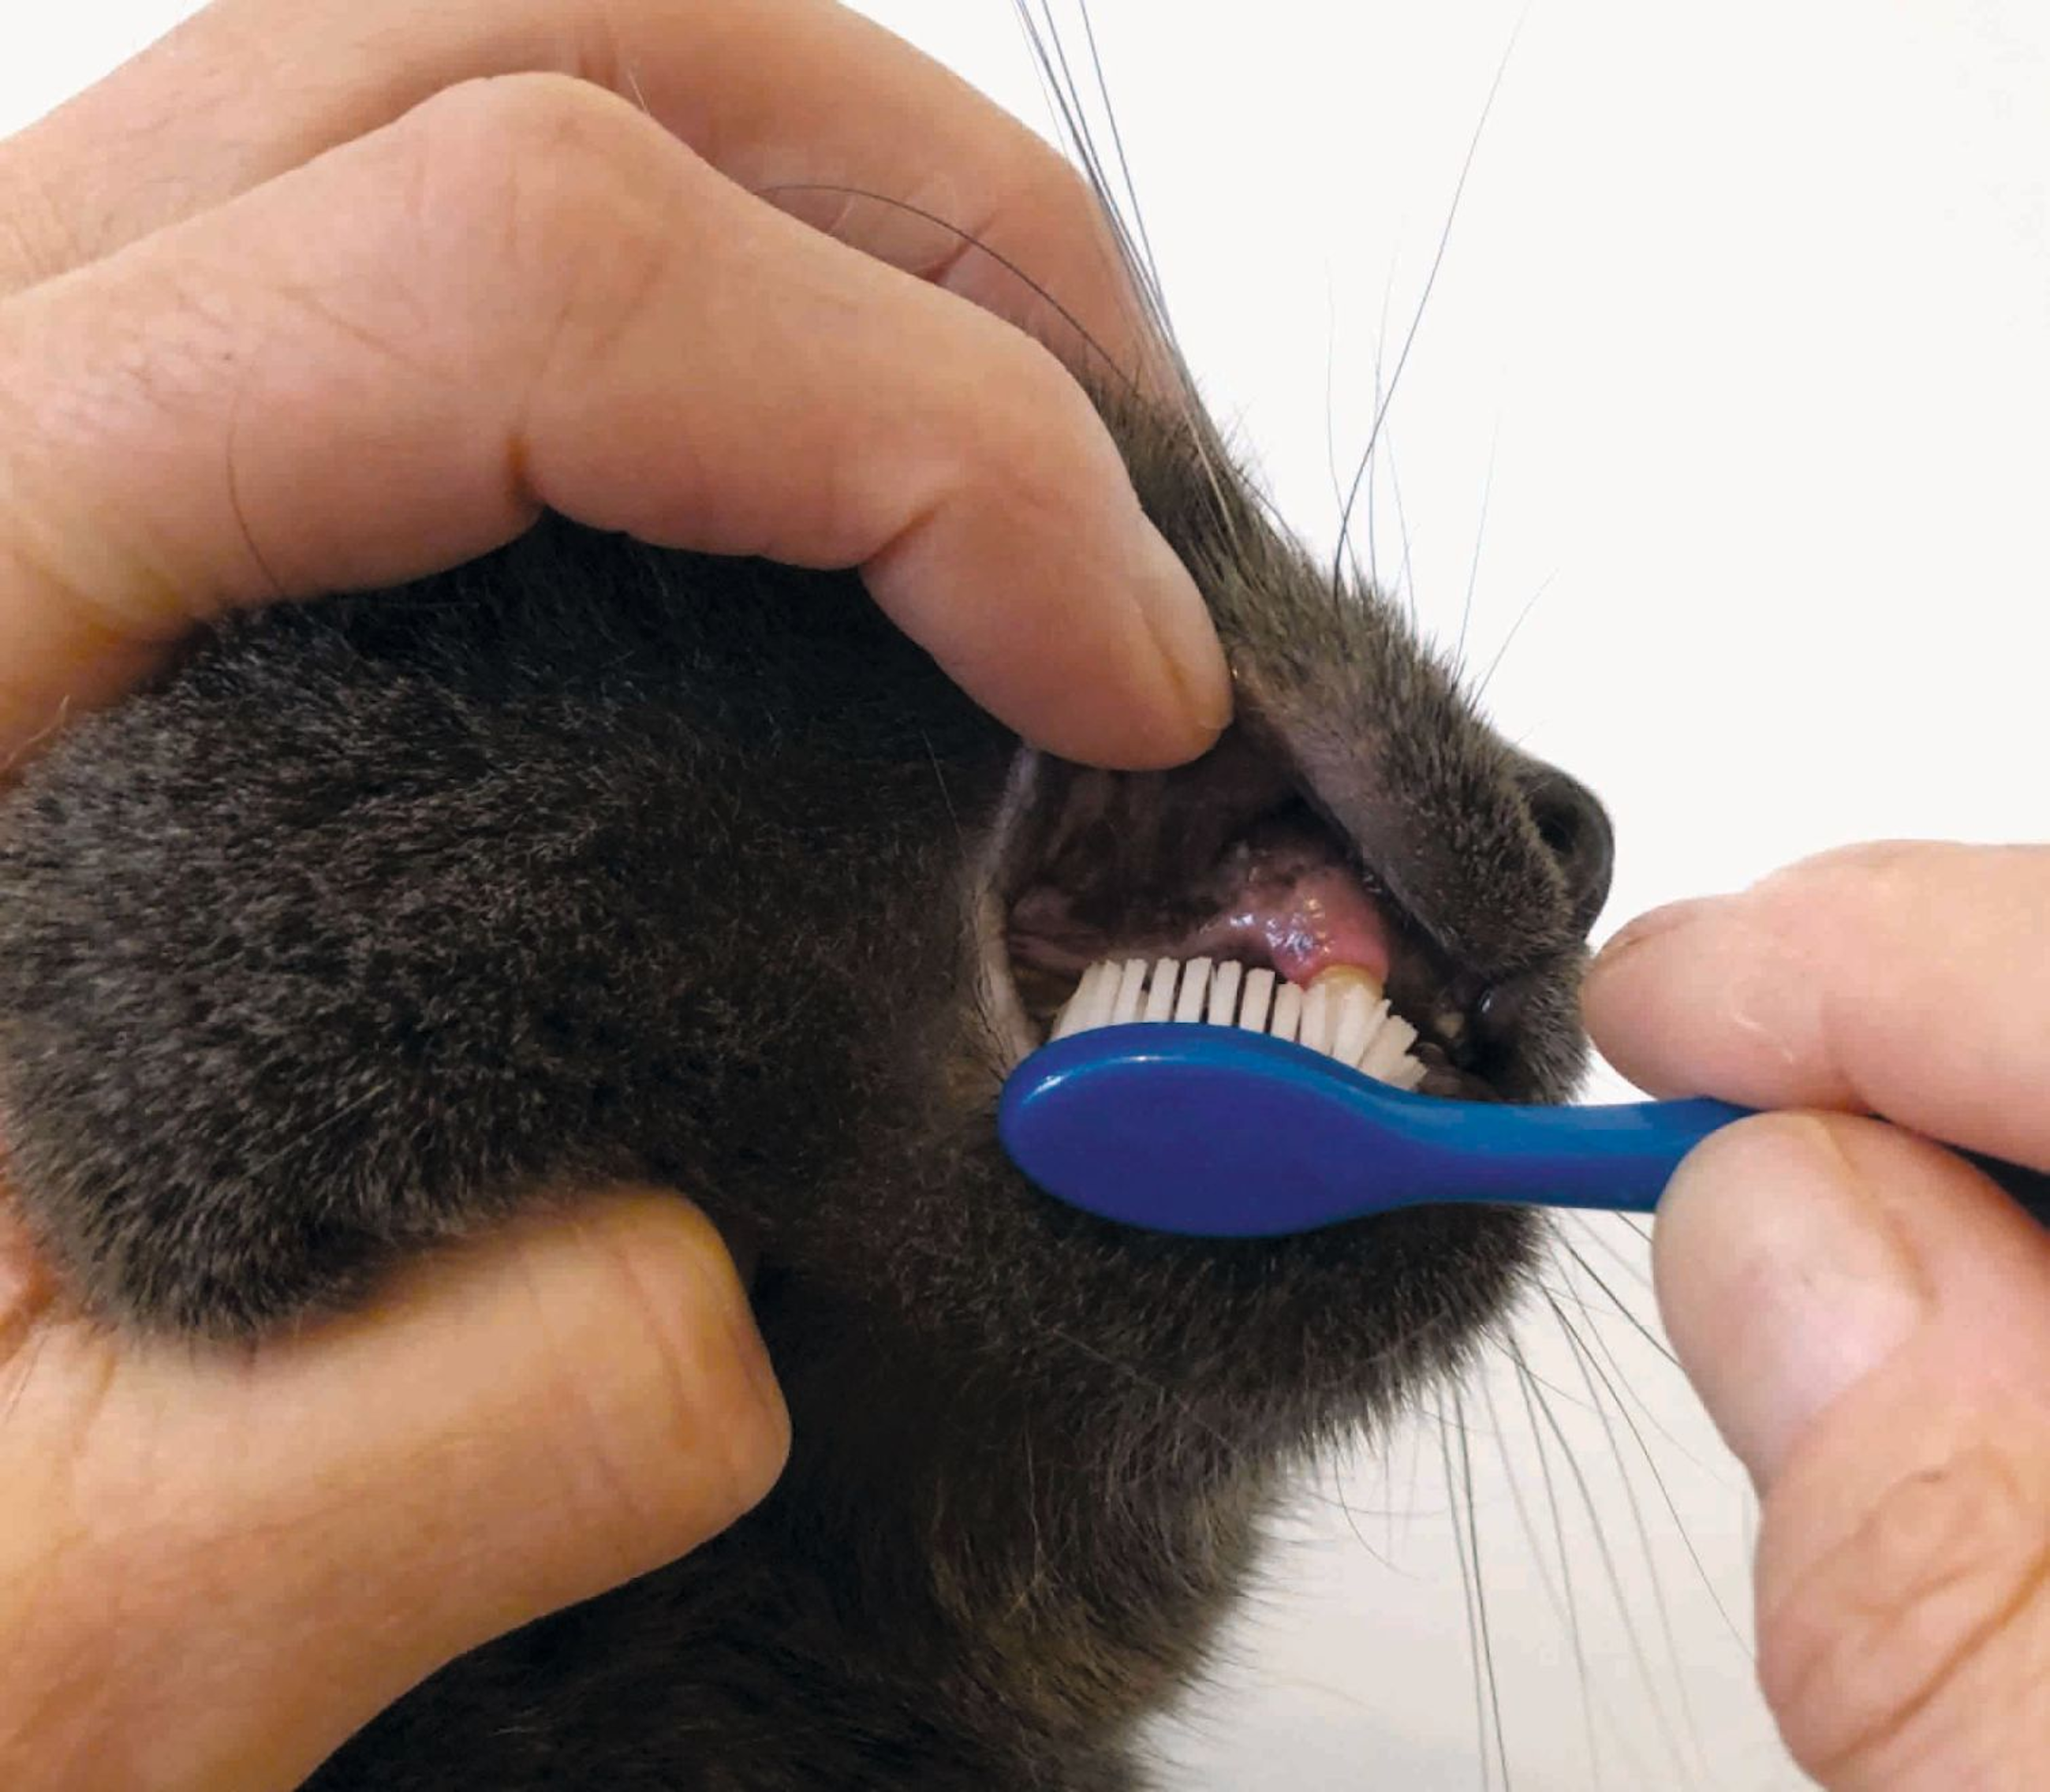 Le brossage quotidien des dents est une méthode active pour maintenir une bonne hygiène bucco-dentaire